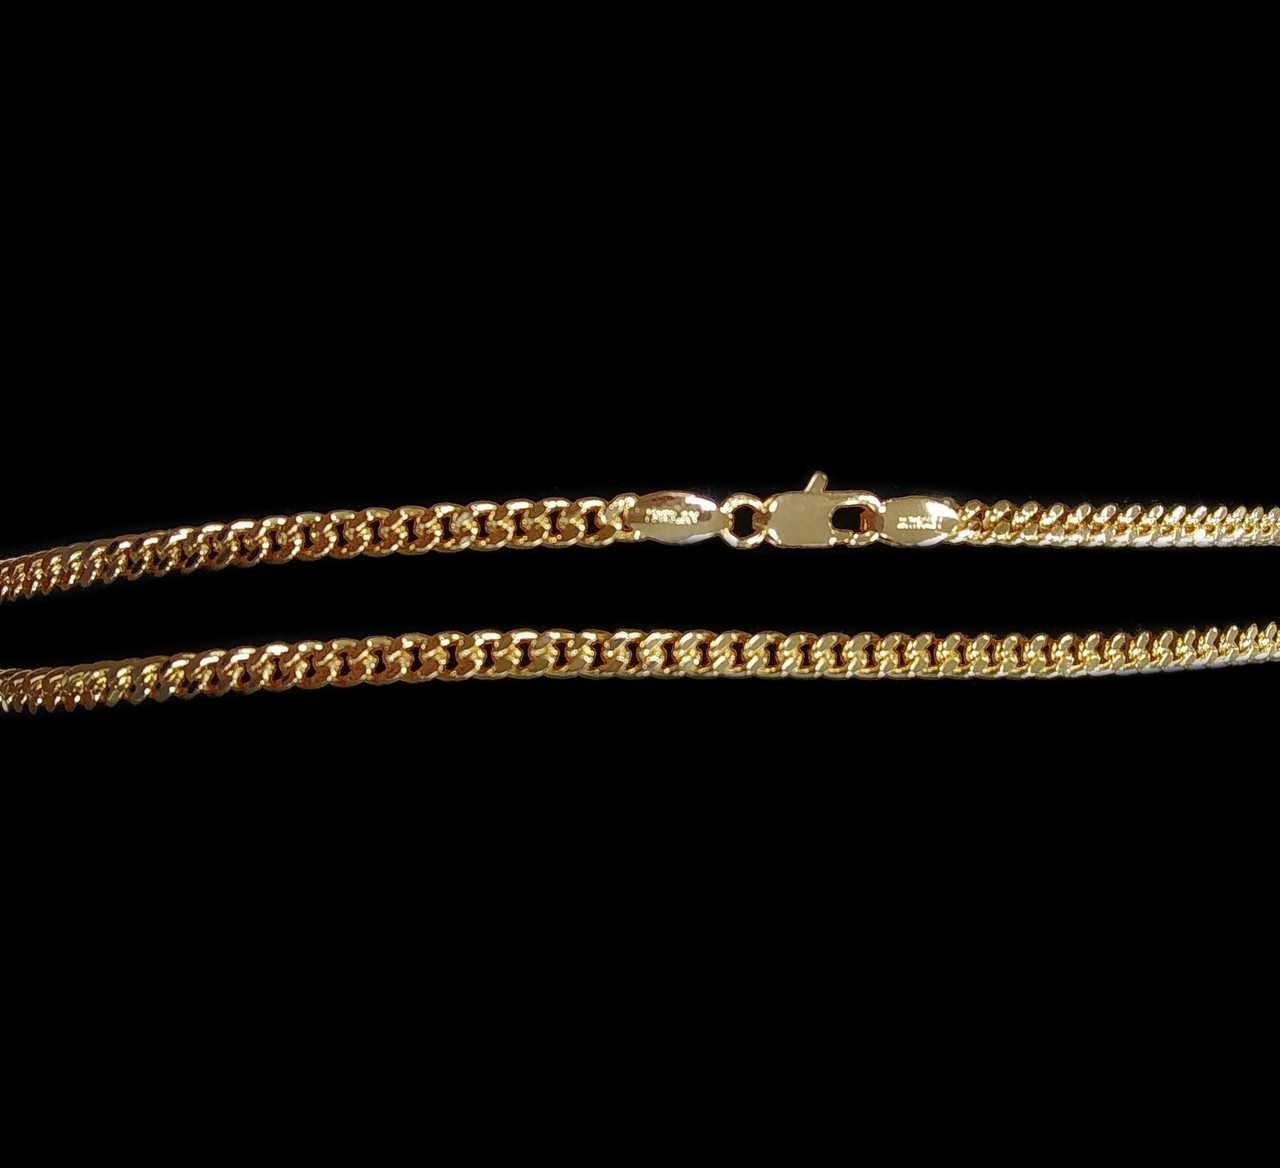 Видов плетения золотых цепочек – великое множество Сейчас они изготавливаются как вручную, так и машинным способом Как правильно выбрать женские модели из золота по названиям типов переплетений